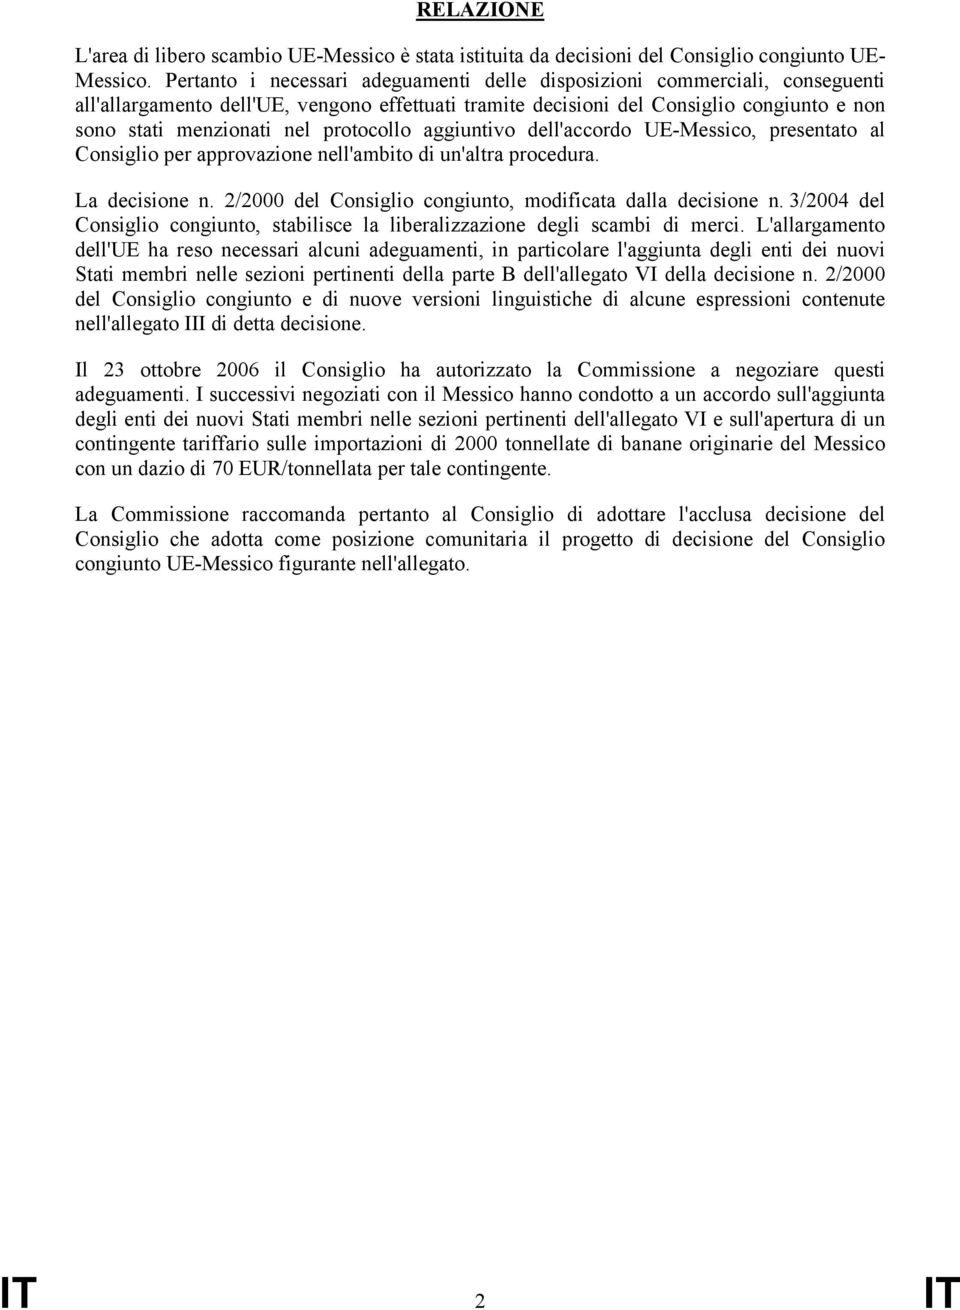 protocollo aggiuntivo dell'accordo UE-Messico, presentato al Consiglio per approvazione nell'ambito di un'altra procedura. La decisione n. 2/2000 del Consiglio congiunto, modificata dalla decisione n.